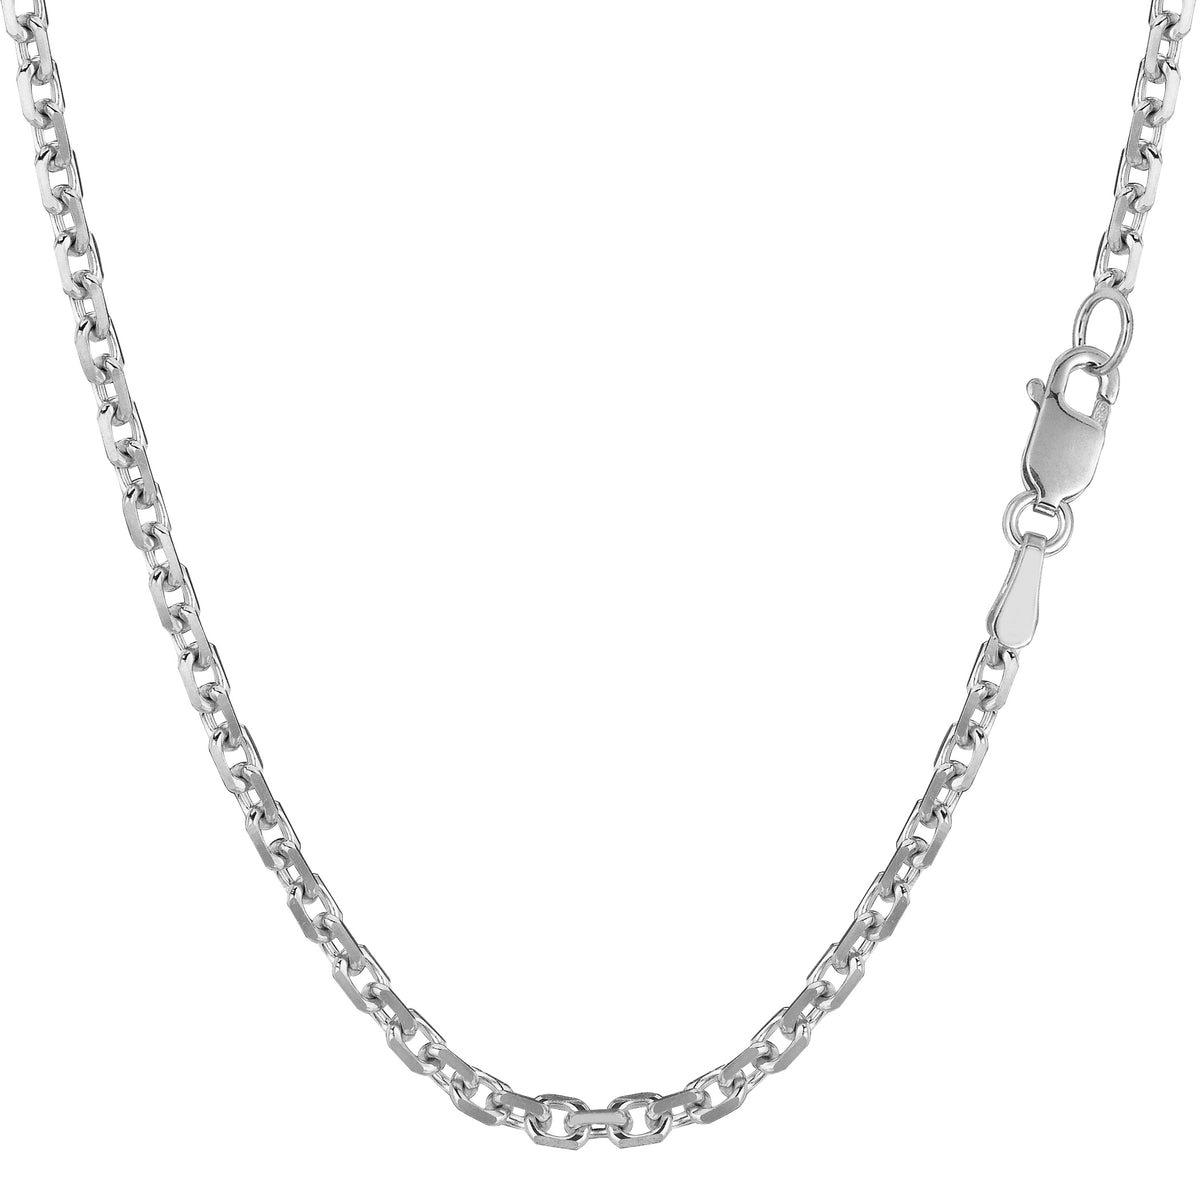 Collar de cadena con eslabones tipo cable de oro blanco de 14 k, joyería fina de diseño de 3,1 mm para hombres y mujeres